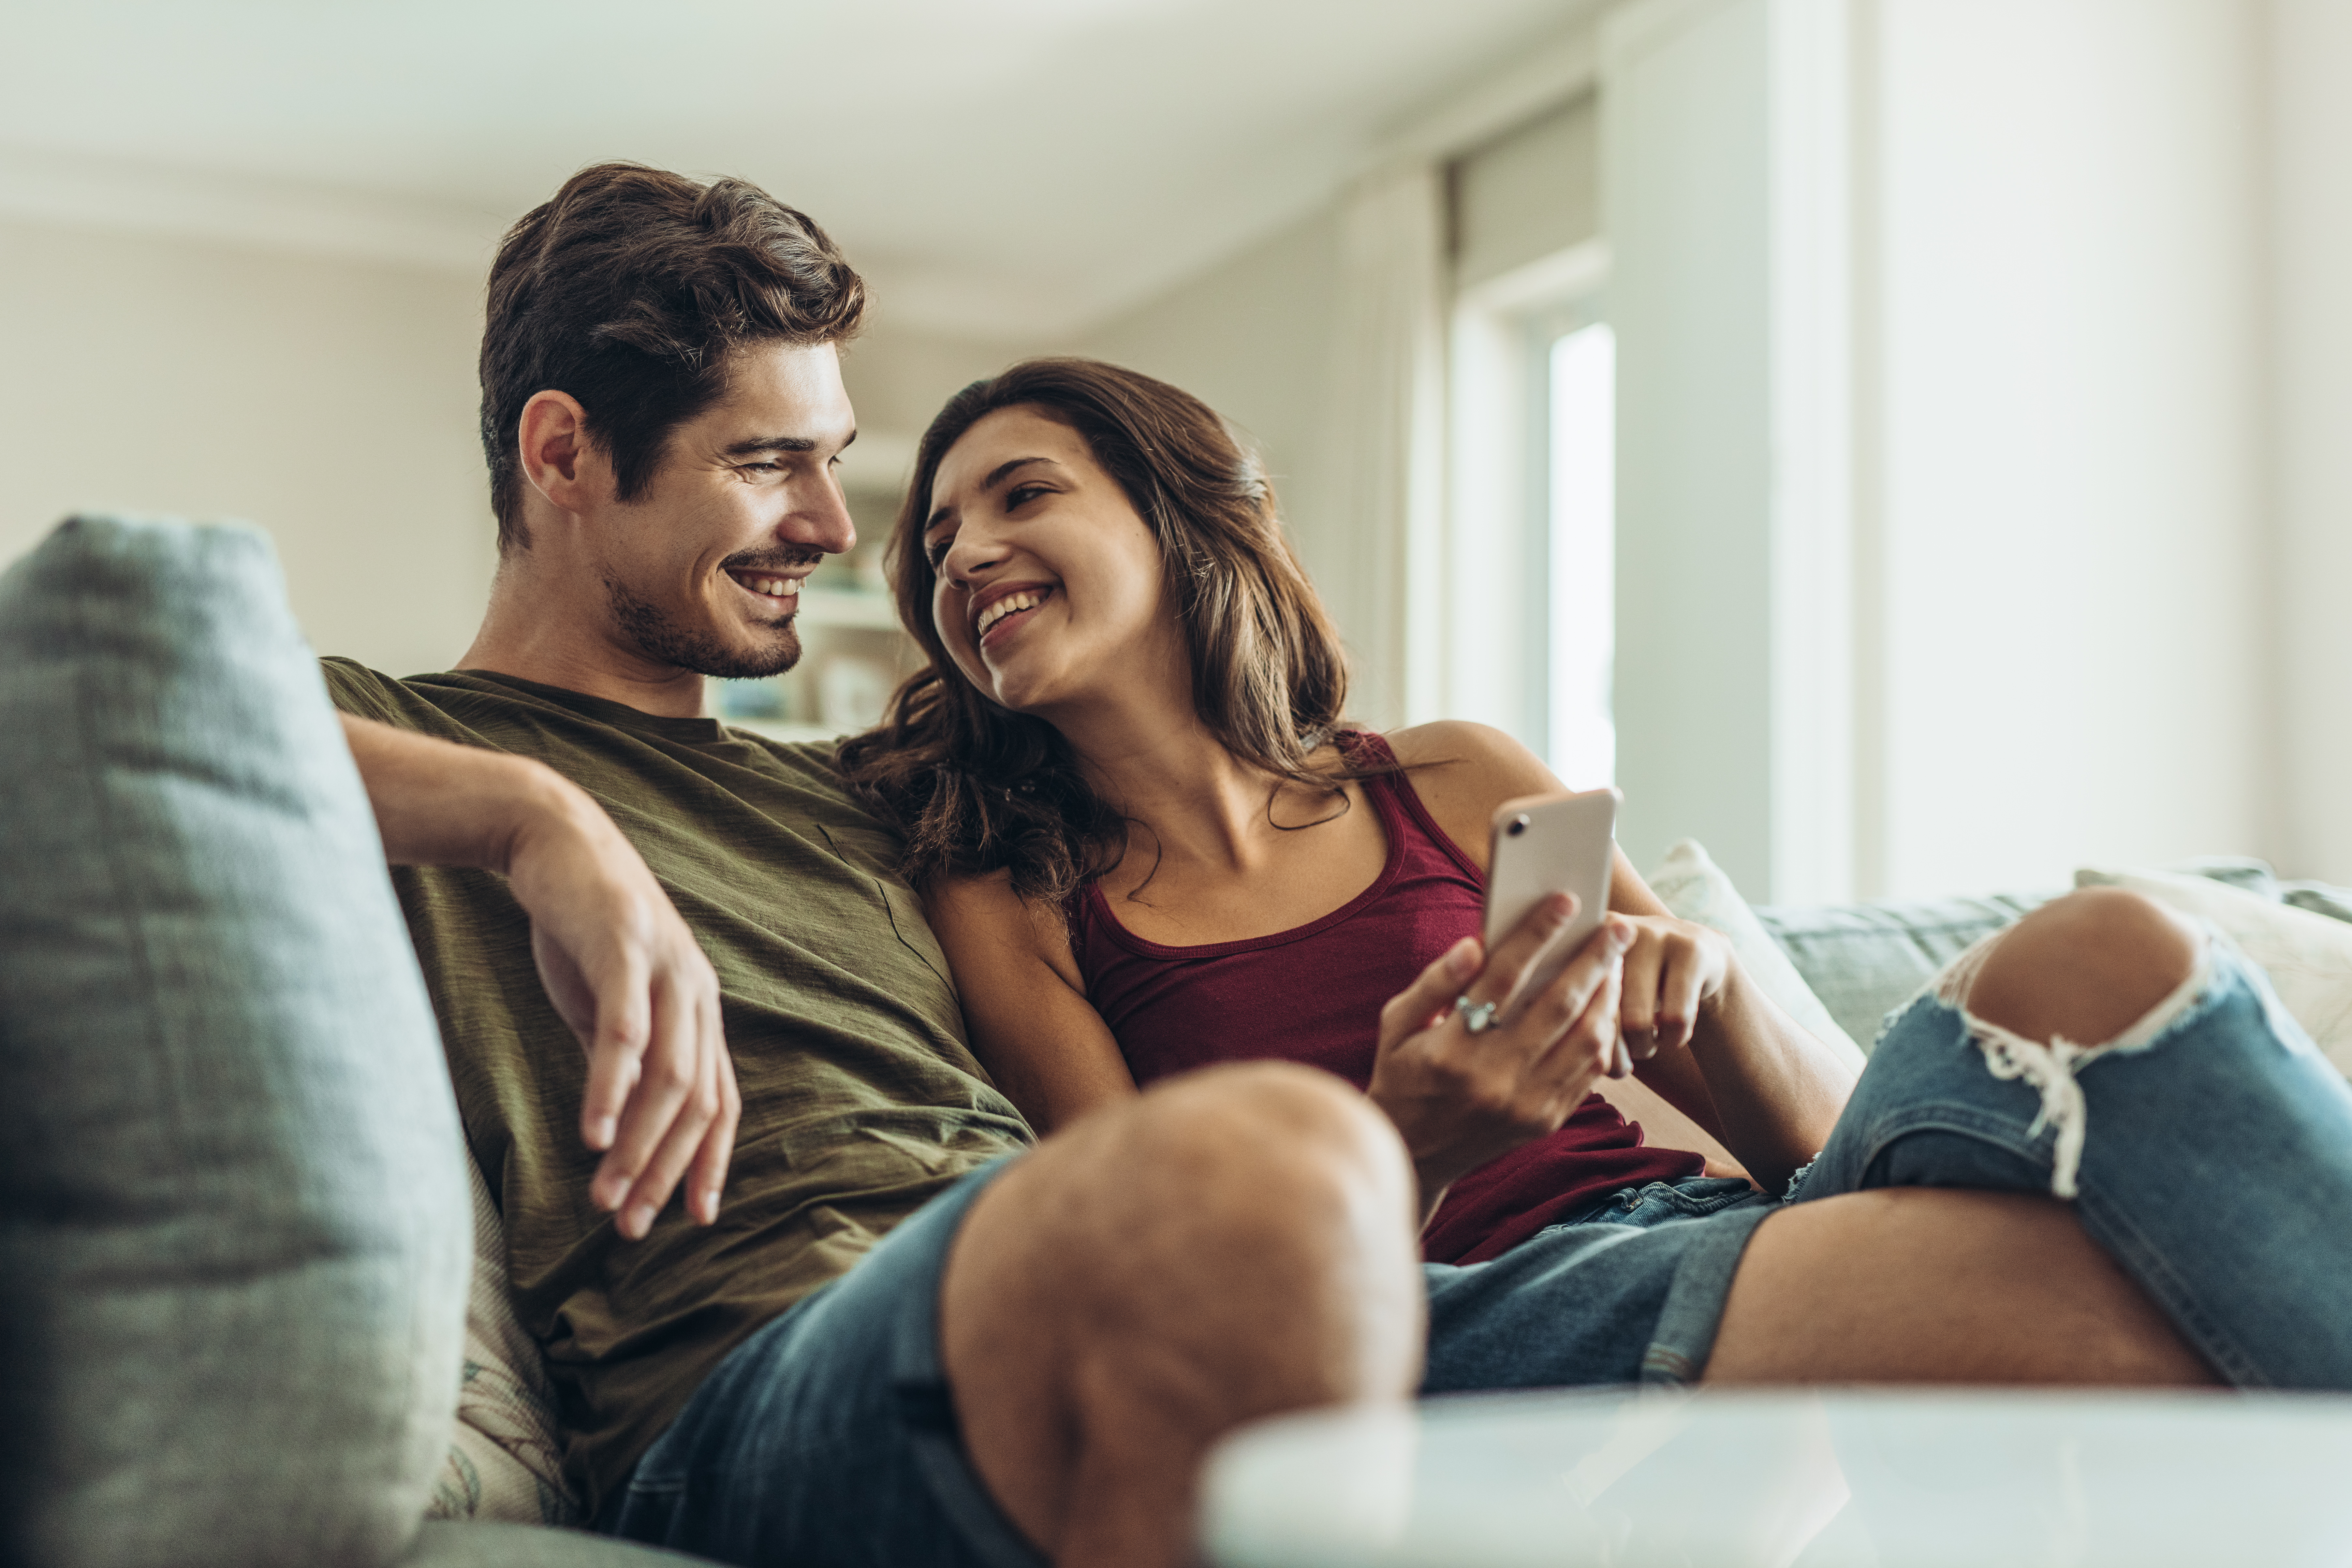 Un couple heureux qui se sourit sur le canapé | Source : Shutterstock